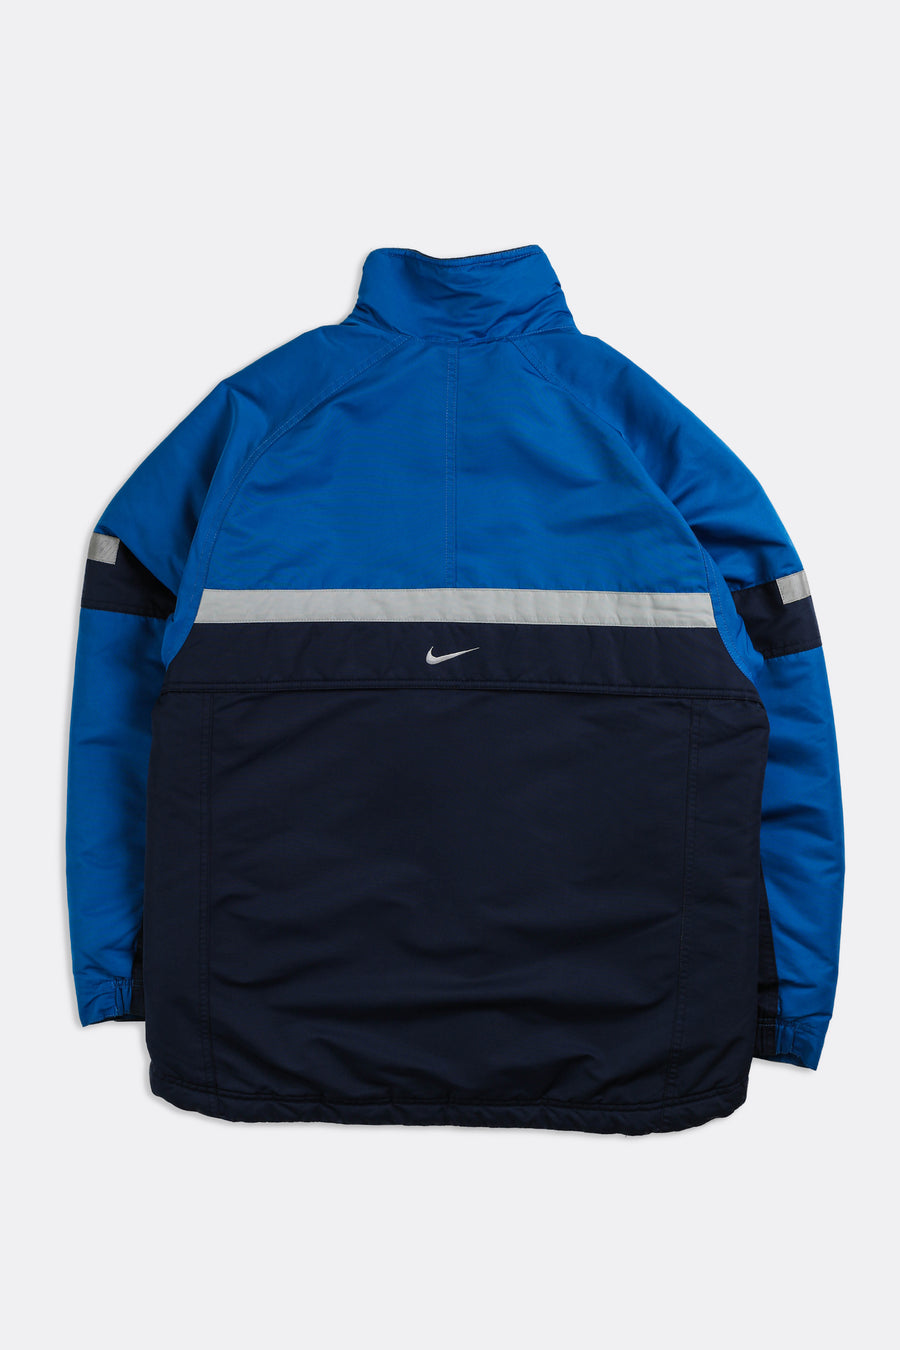 Vintage Nike Jacket